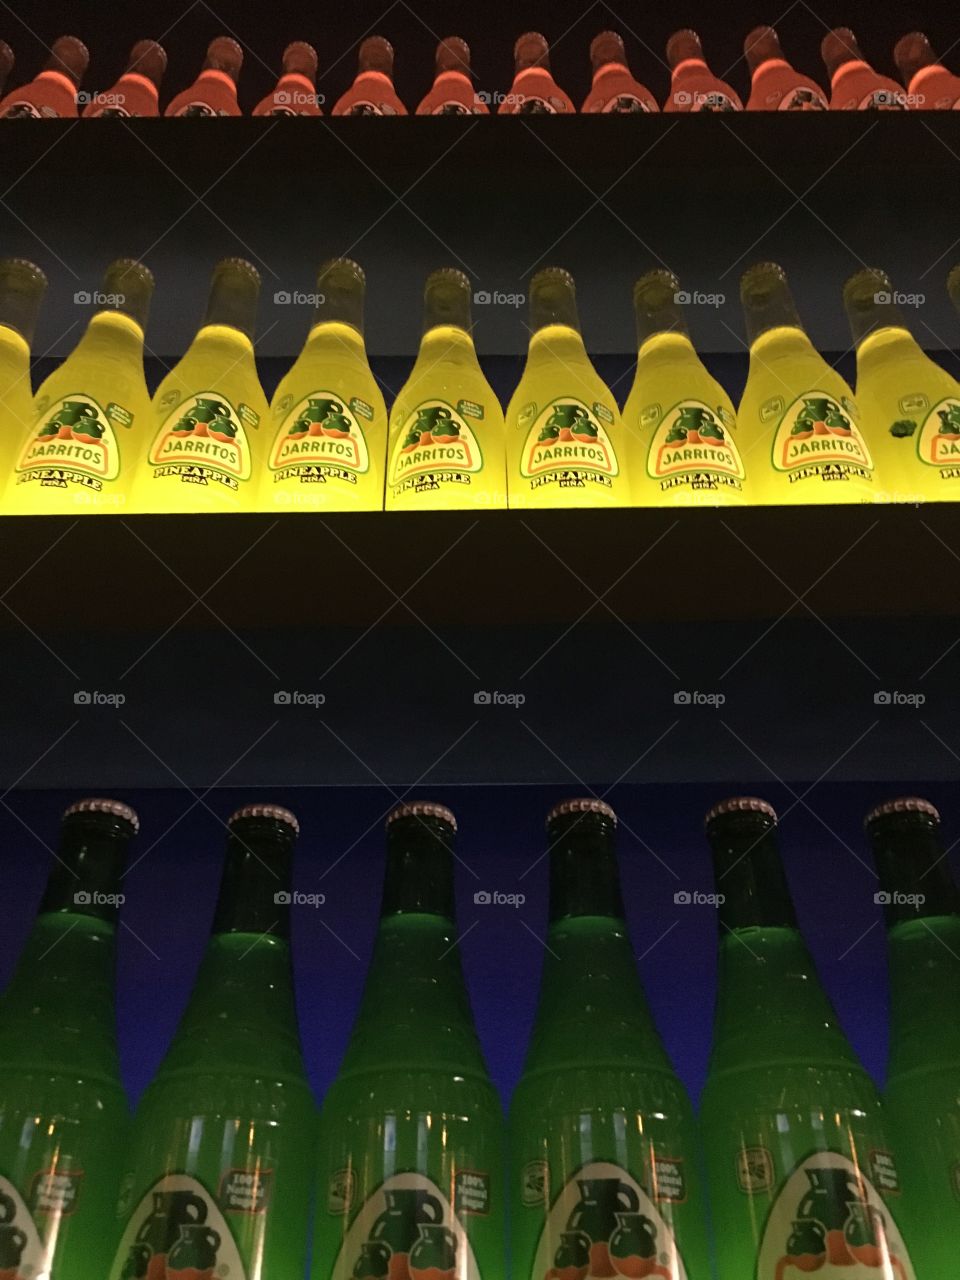 Soda bottles in colored light 